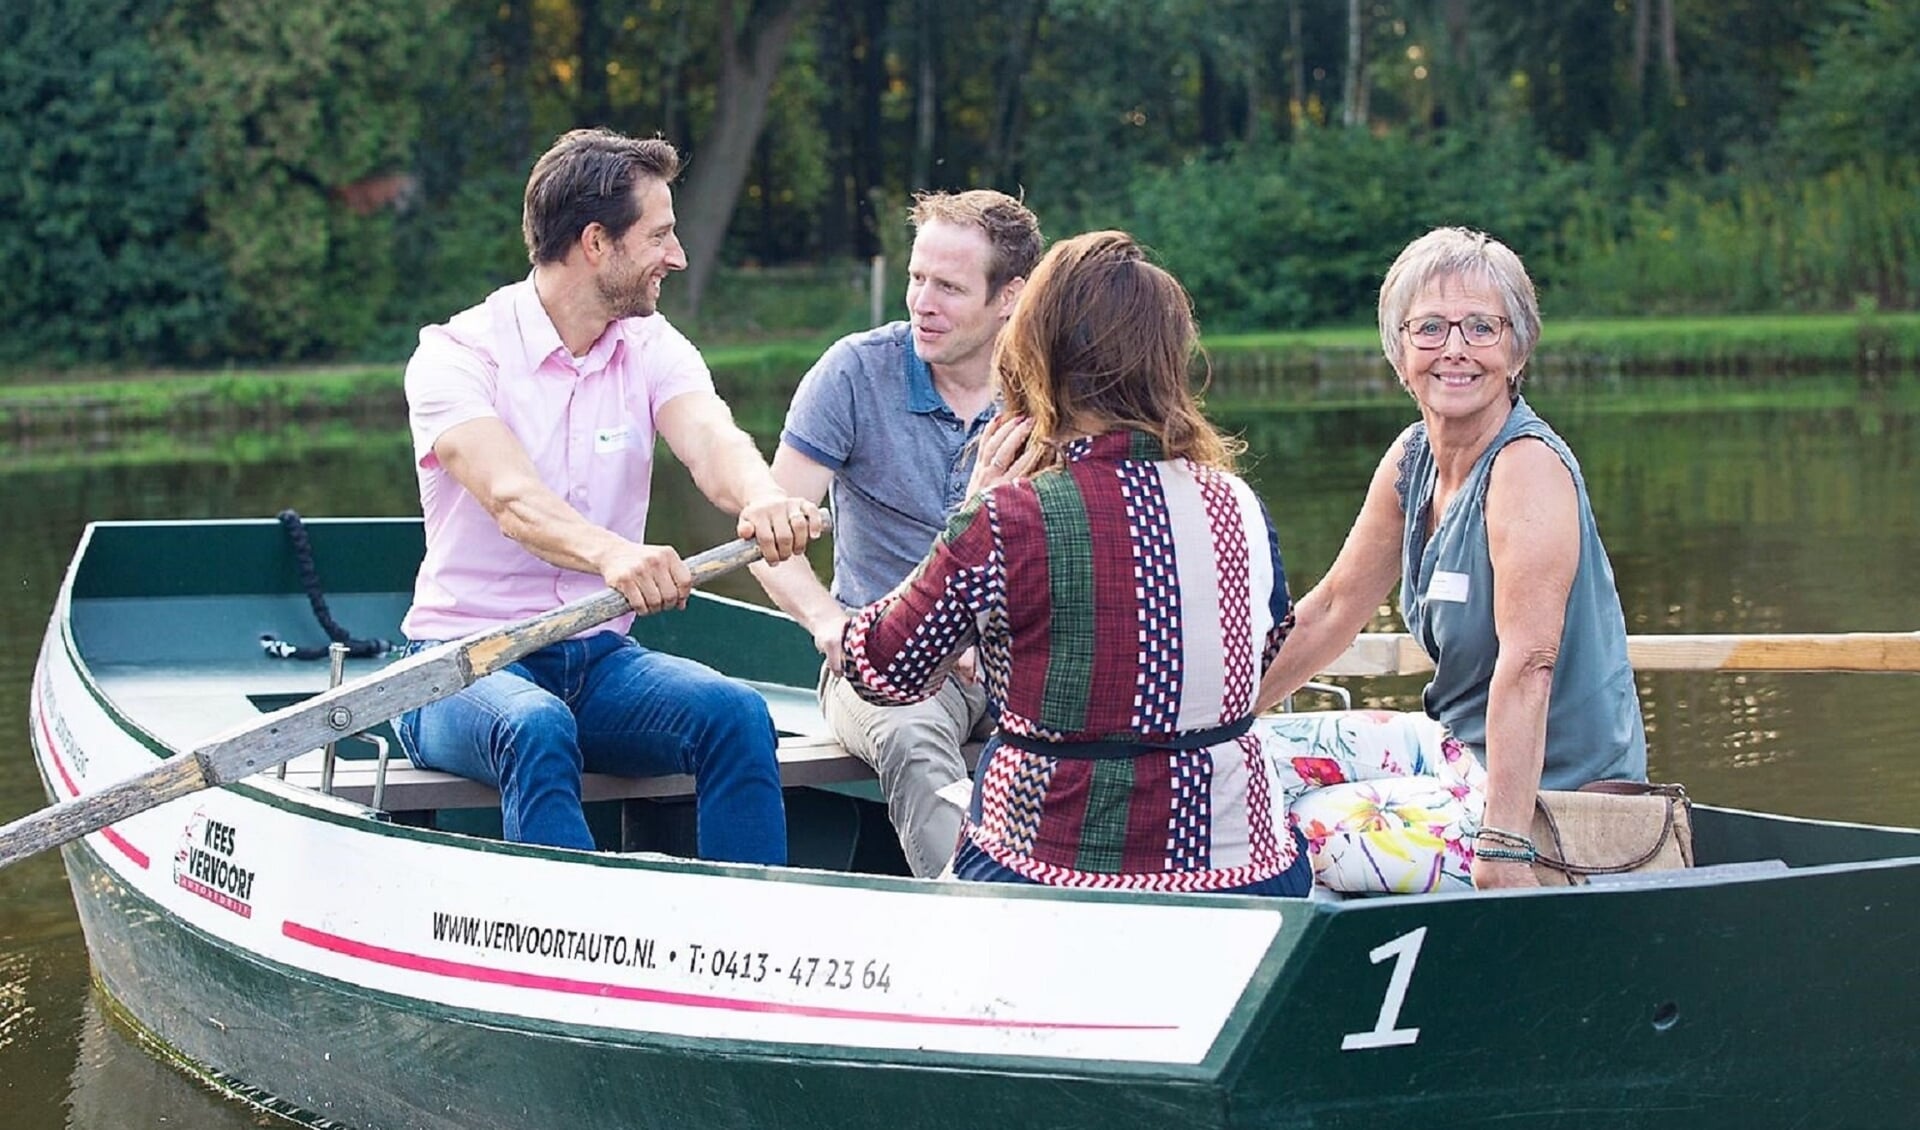 Tijdens de bijeenkomst konden de ondernemers in een roeiboot stappen voor een tochtje over het water.  